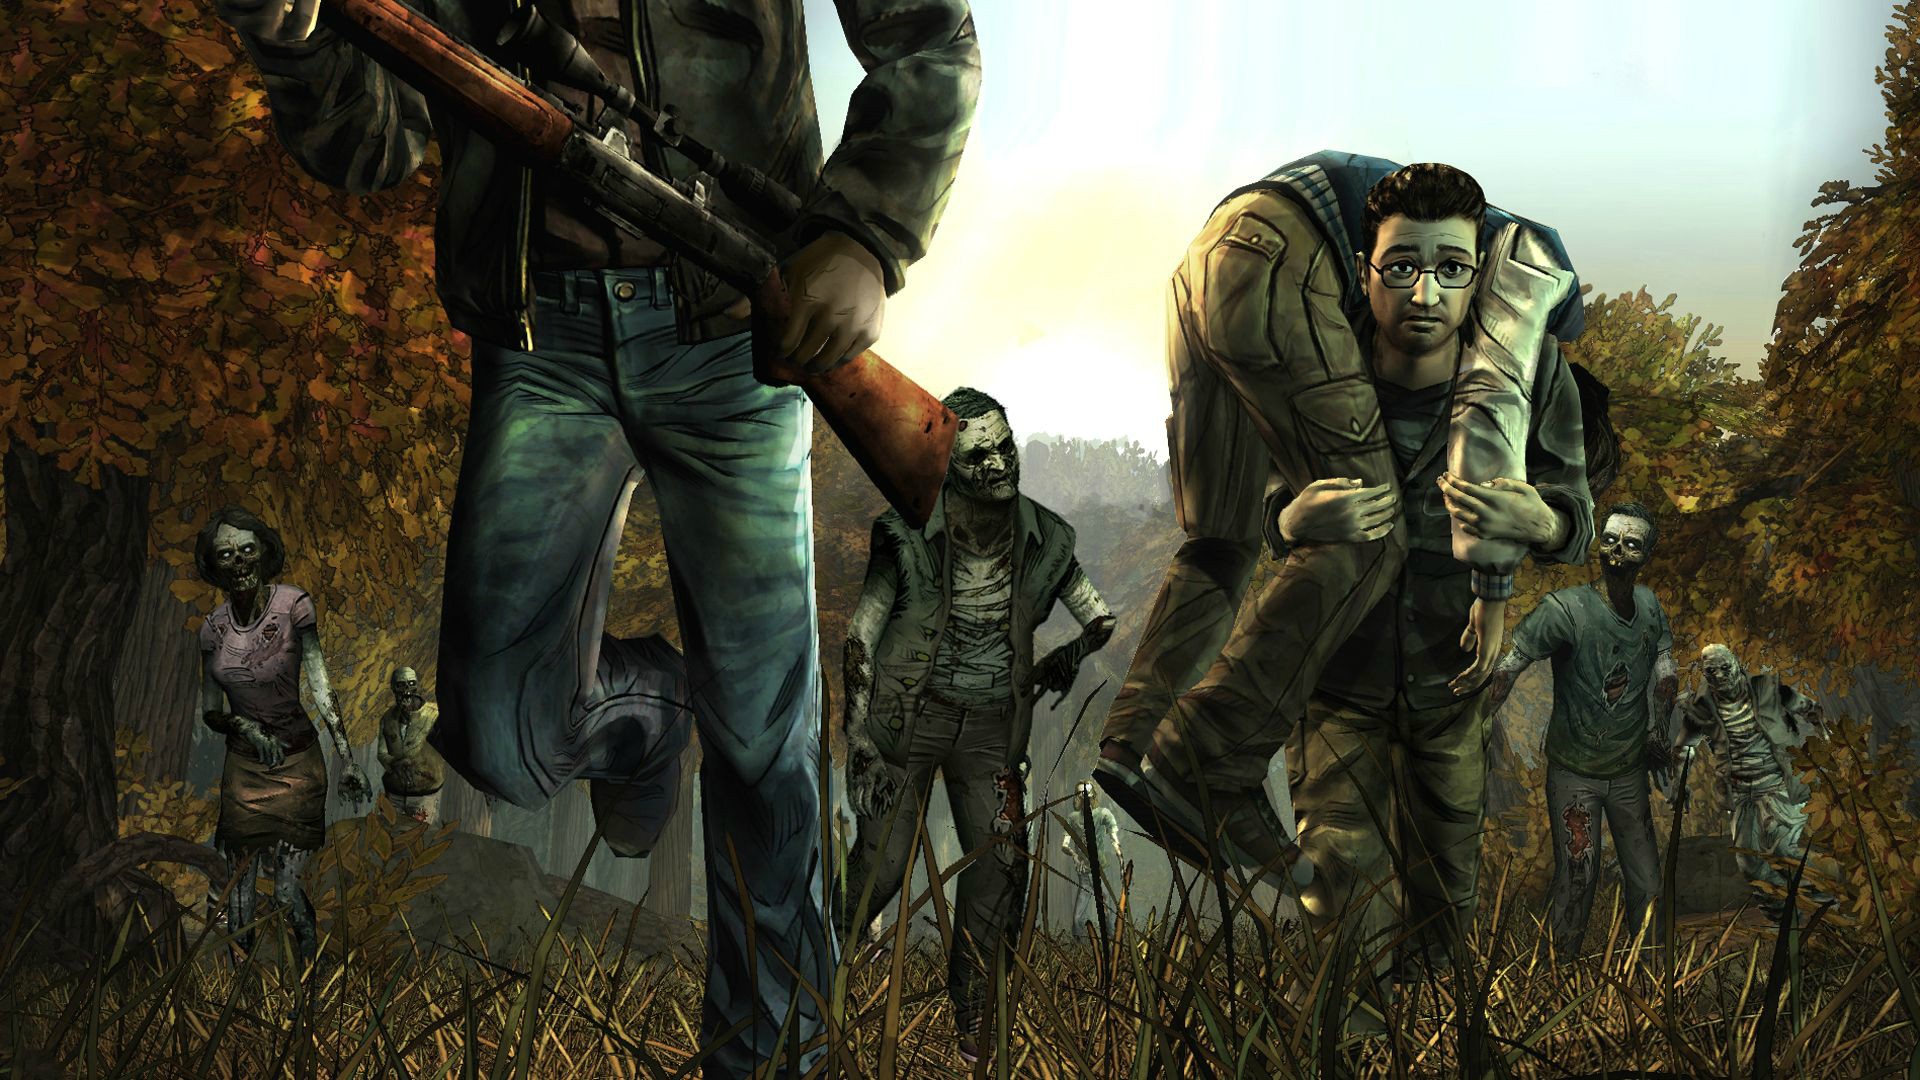 The Walking Dead: Episode 2 - Starved for Help (Foto: Divulgação)